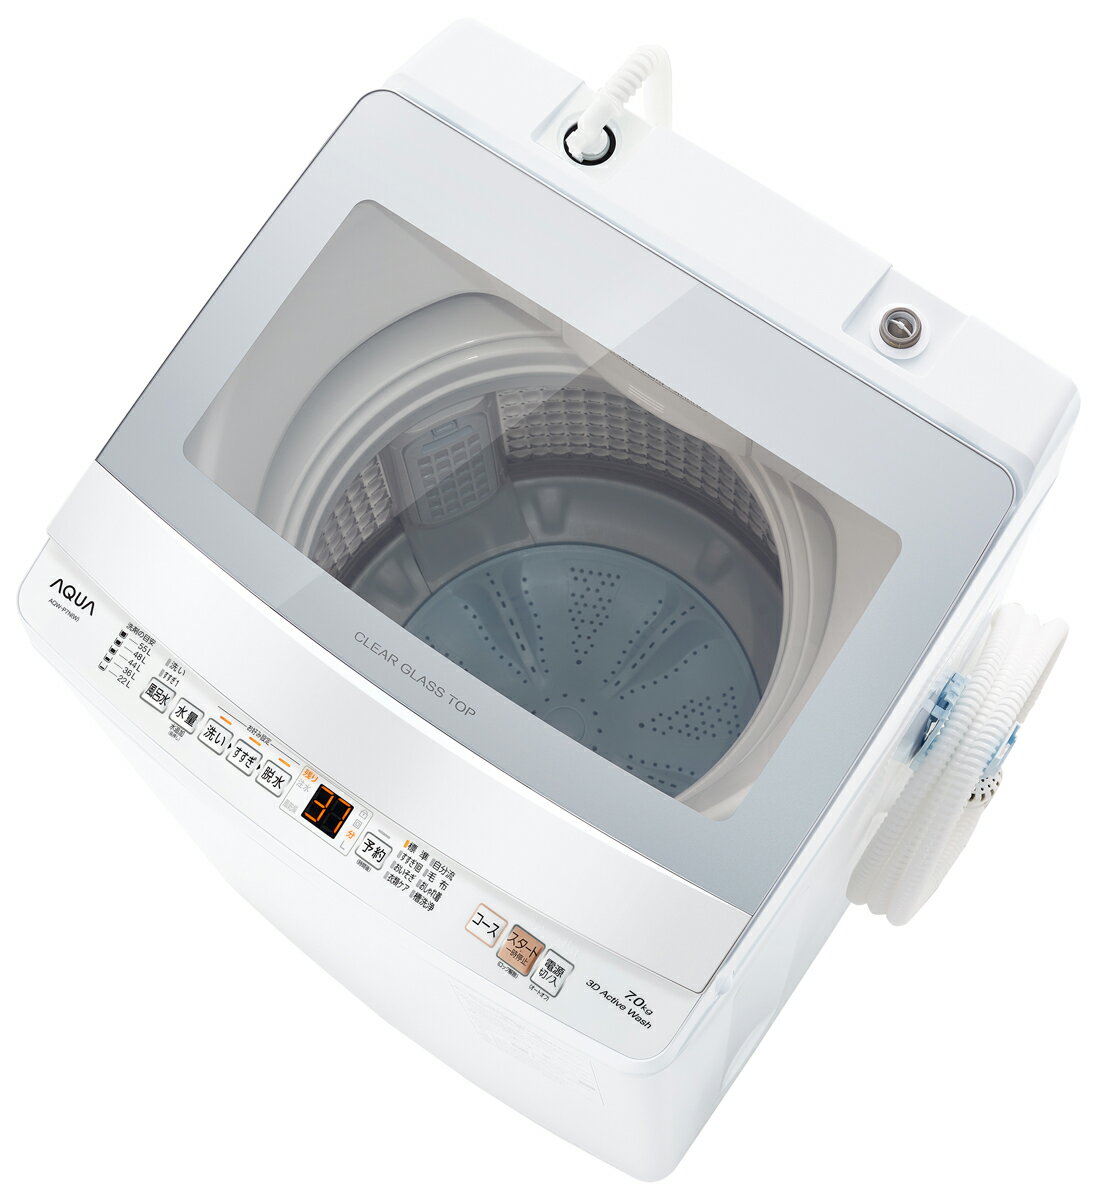 安いアクア 7.0kg全自動洗濯機の通販商品を比較 | ショッピング情報の 